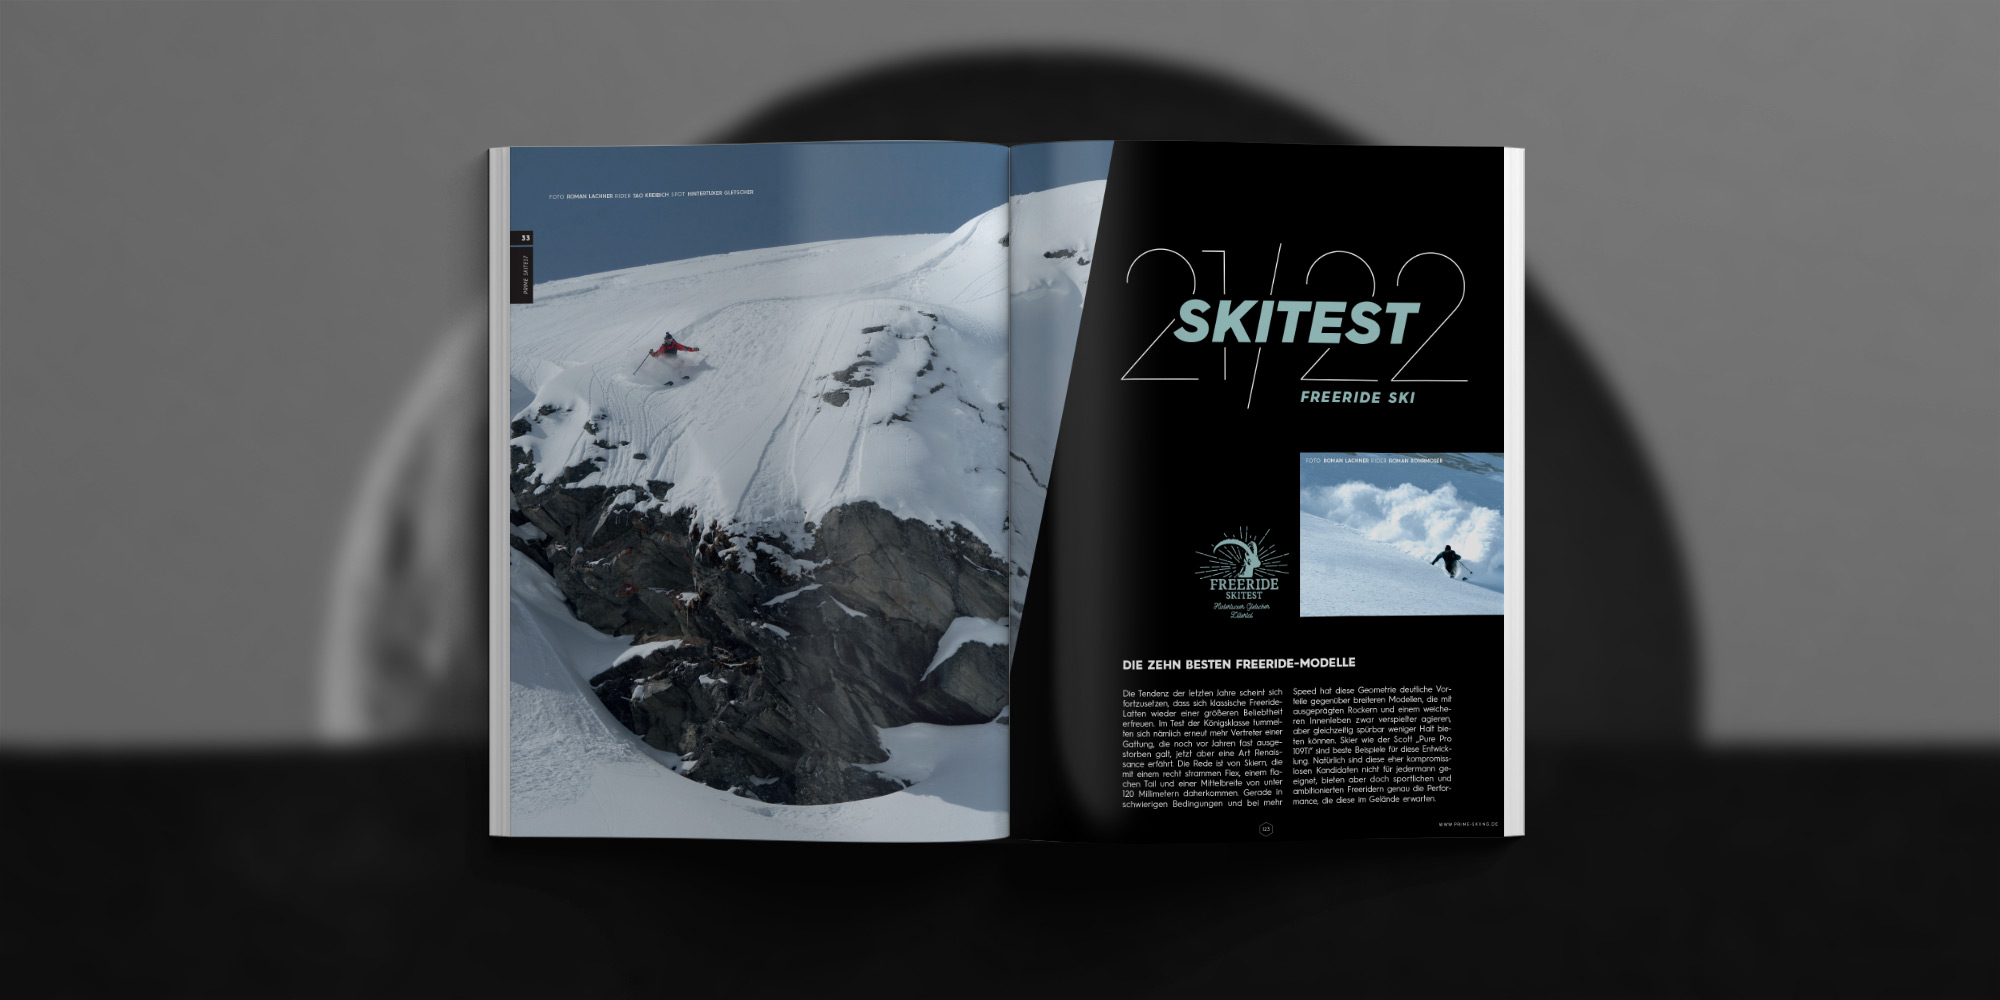 PRIME Skiing #33 - Artikel Highlights: Skitest 21/22 - Die 10 besten Freeride-Modelle